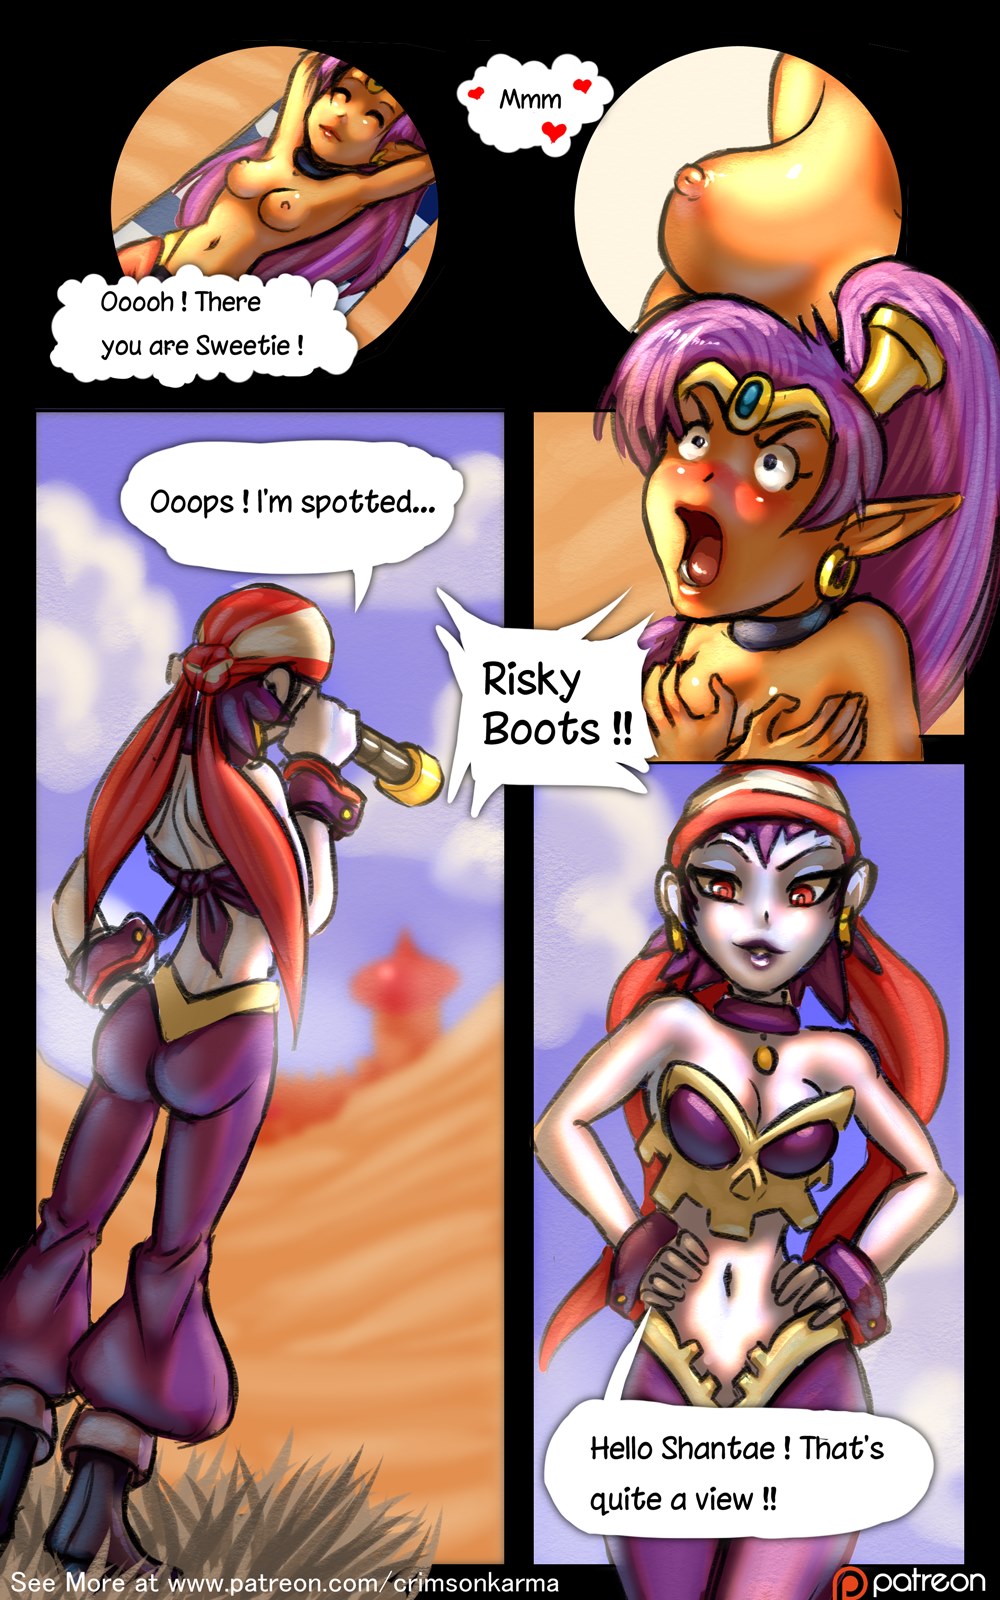 Shantae risky porn game